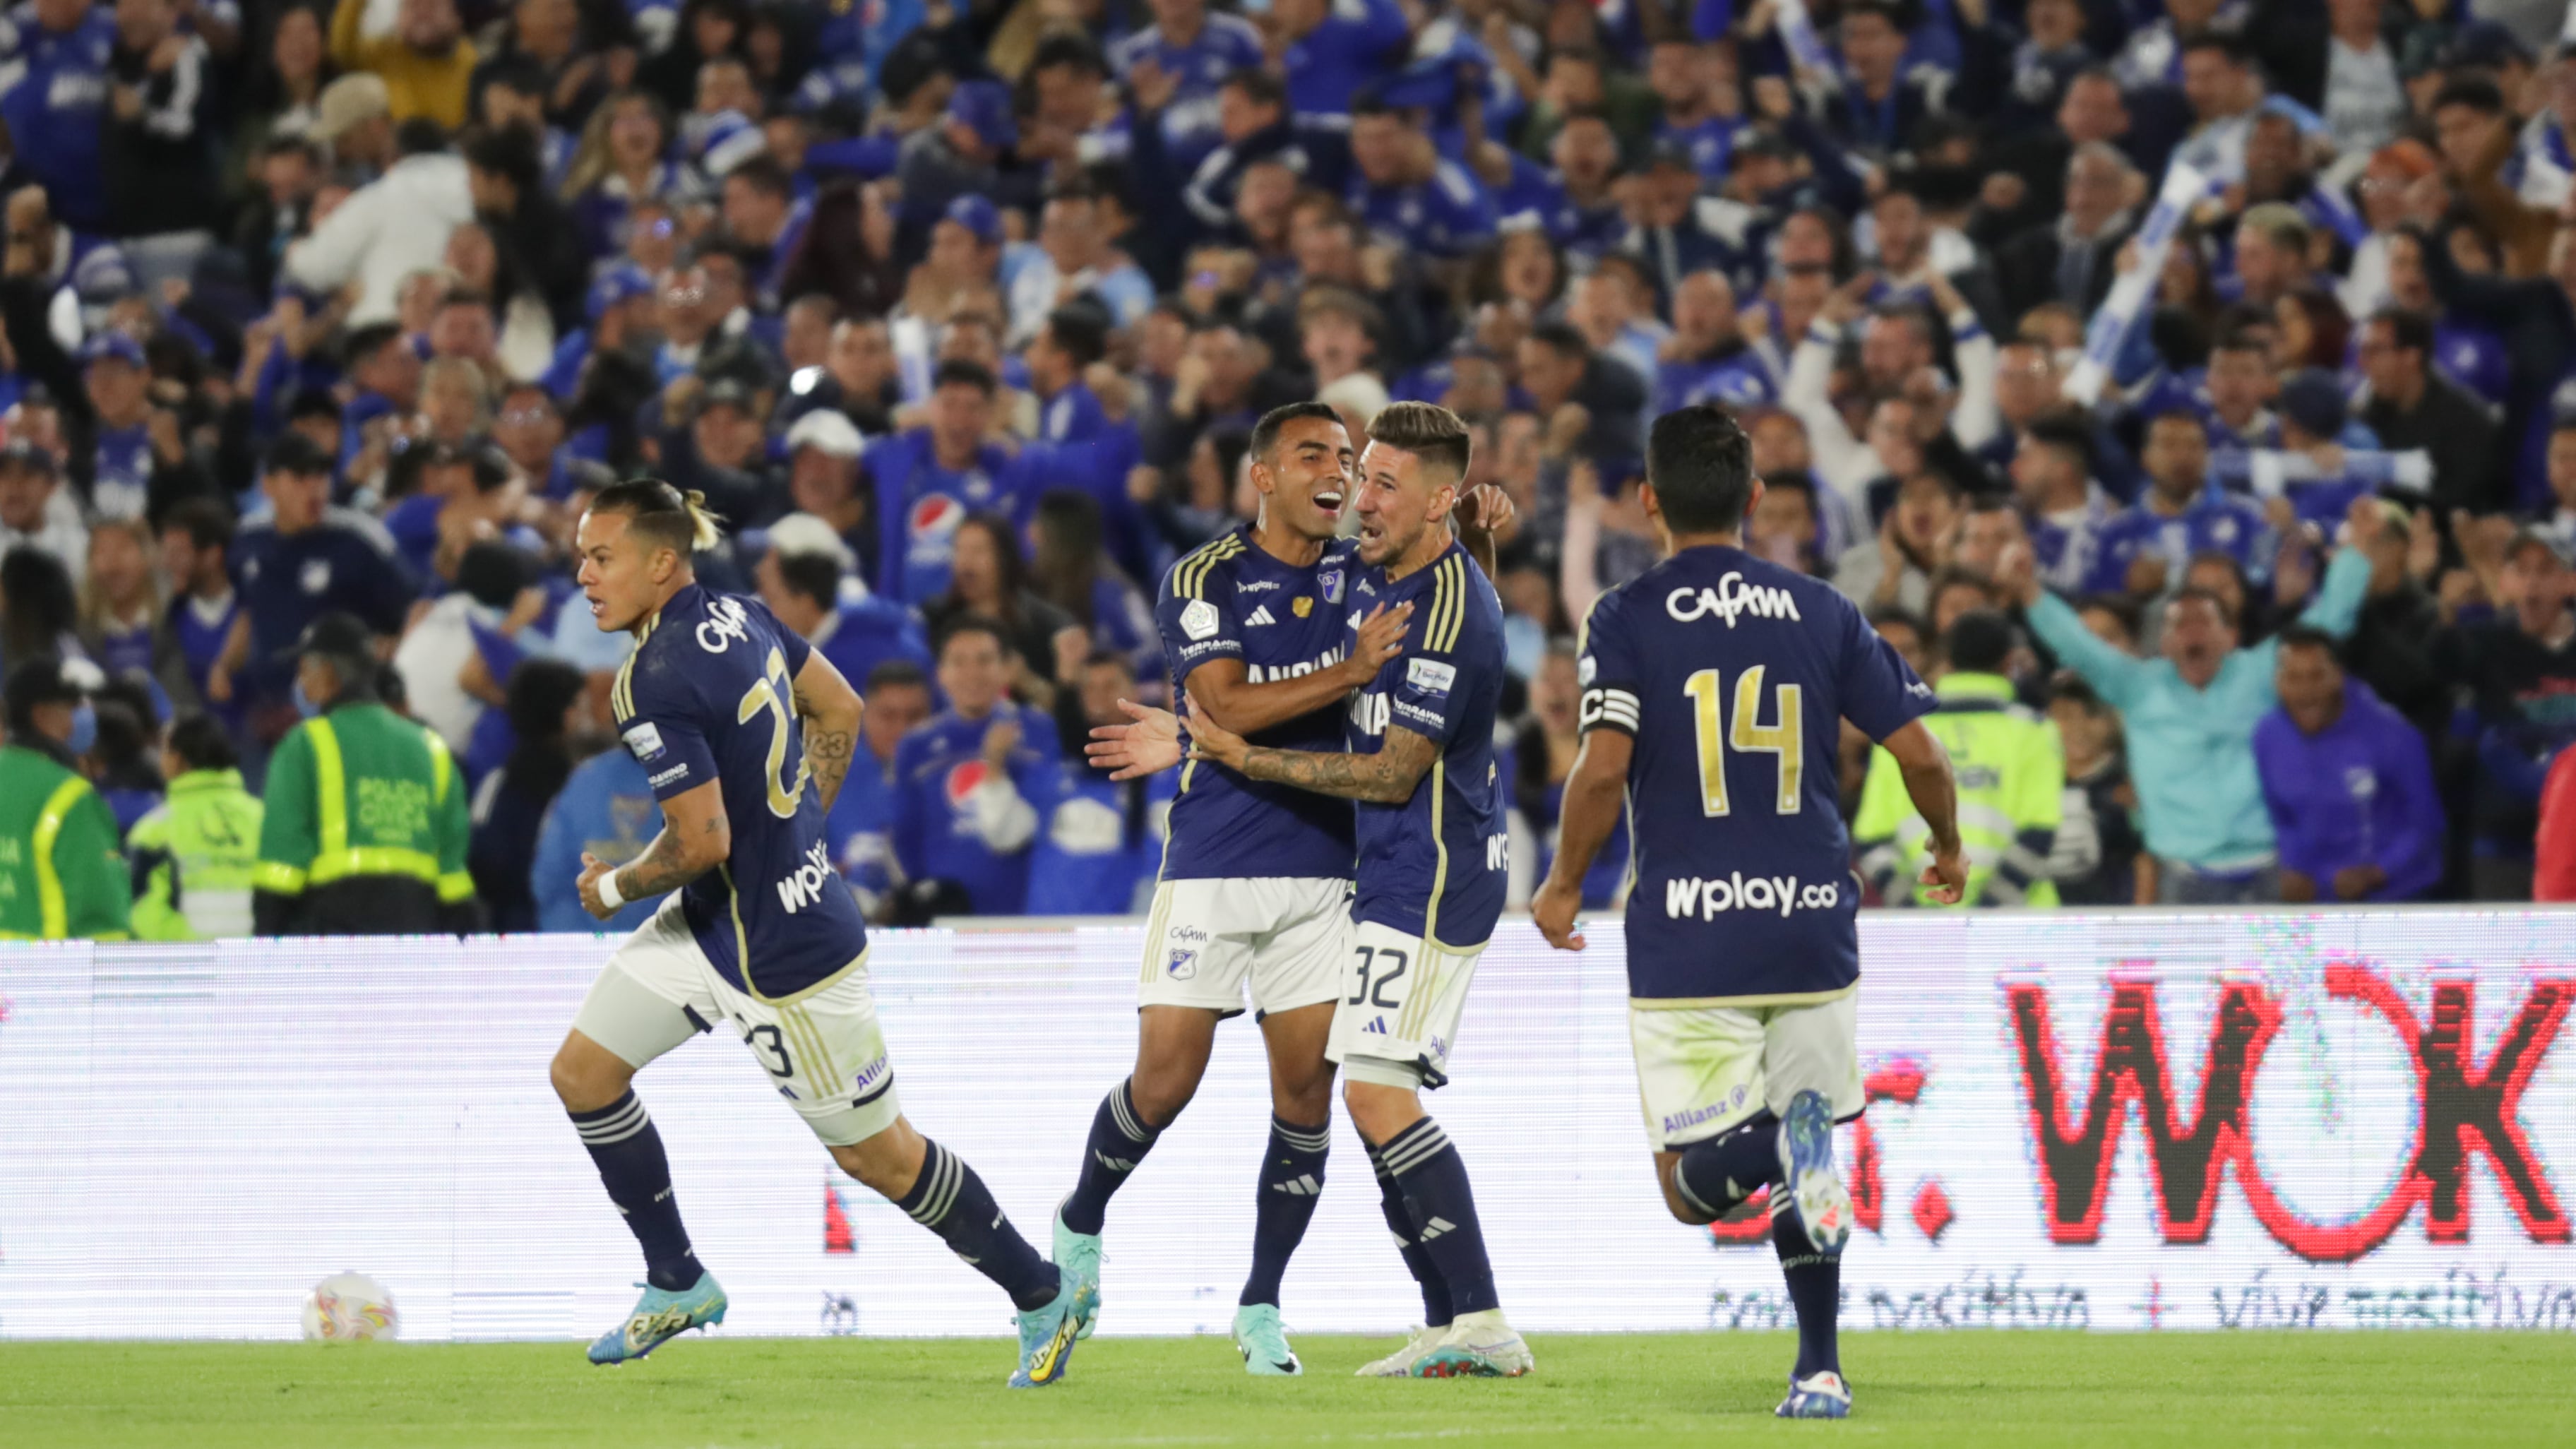 Millonarios VS Junior por la final de la Superliga en el Estadio El Campín de Bogotá